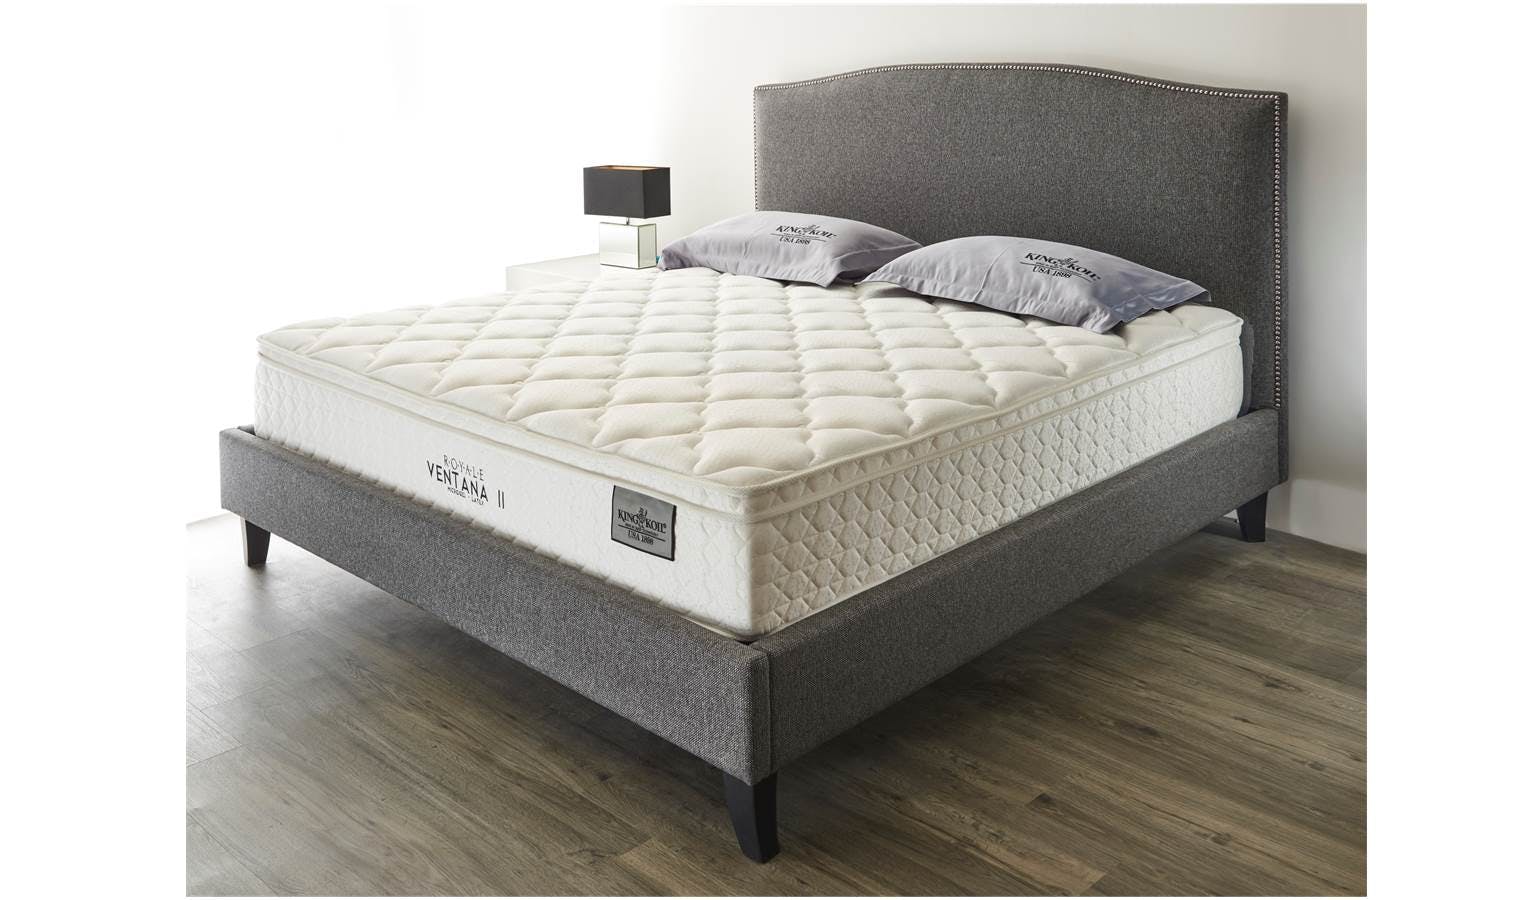 king koil mattress size